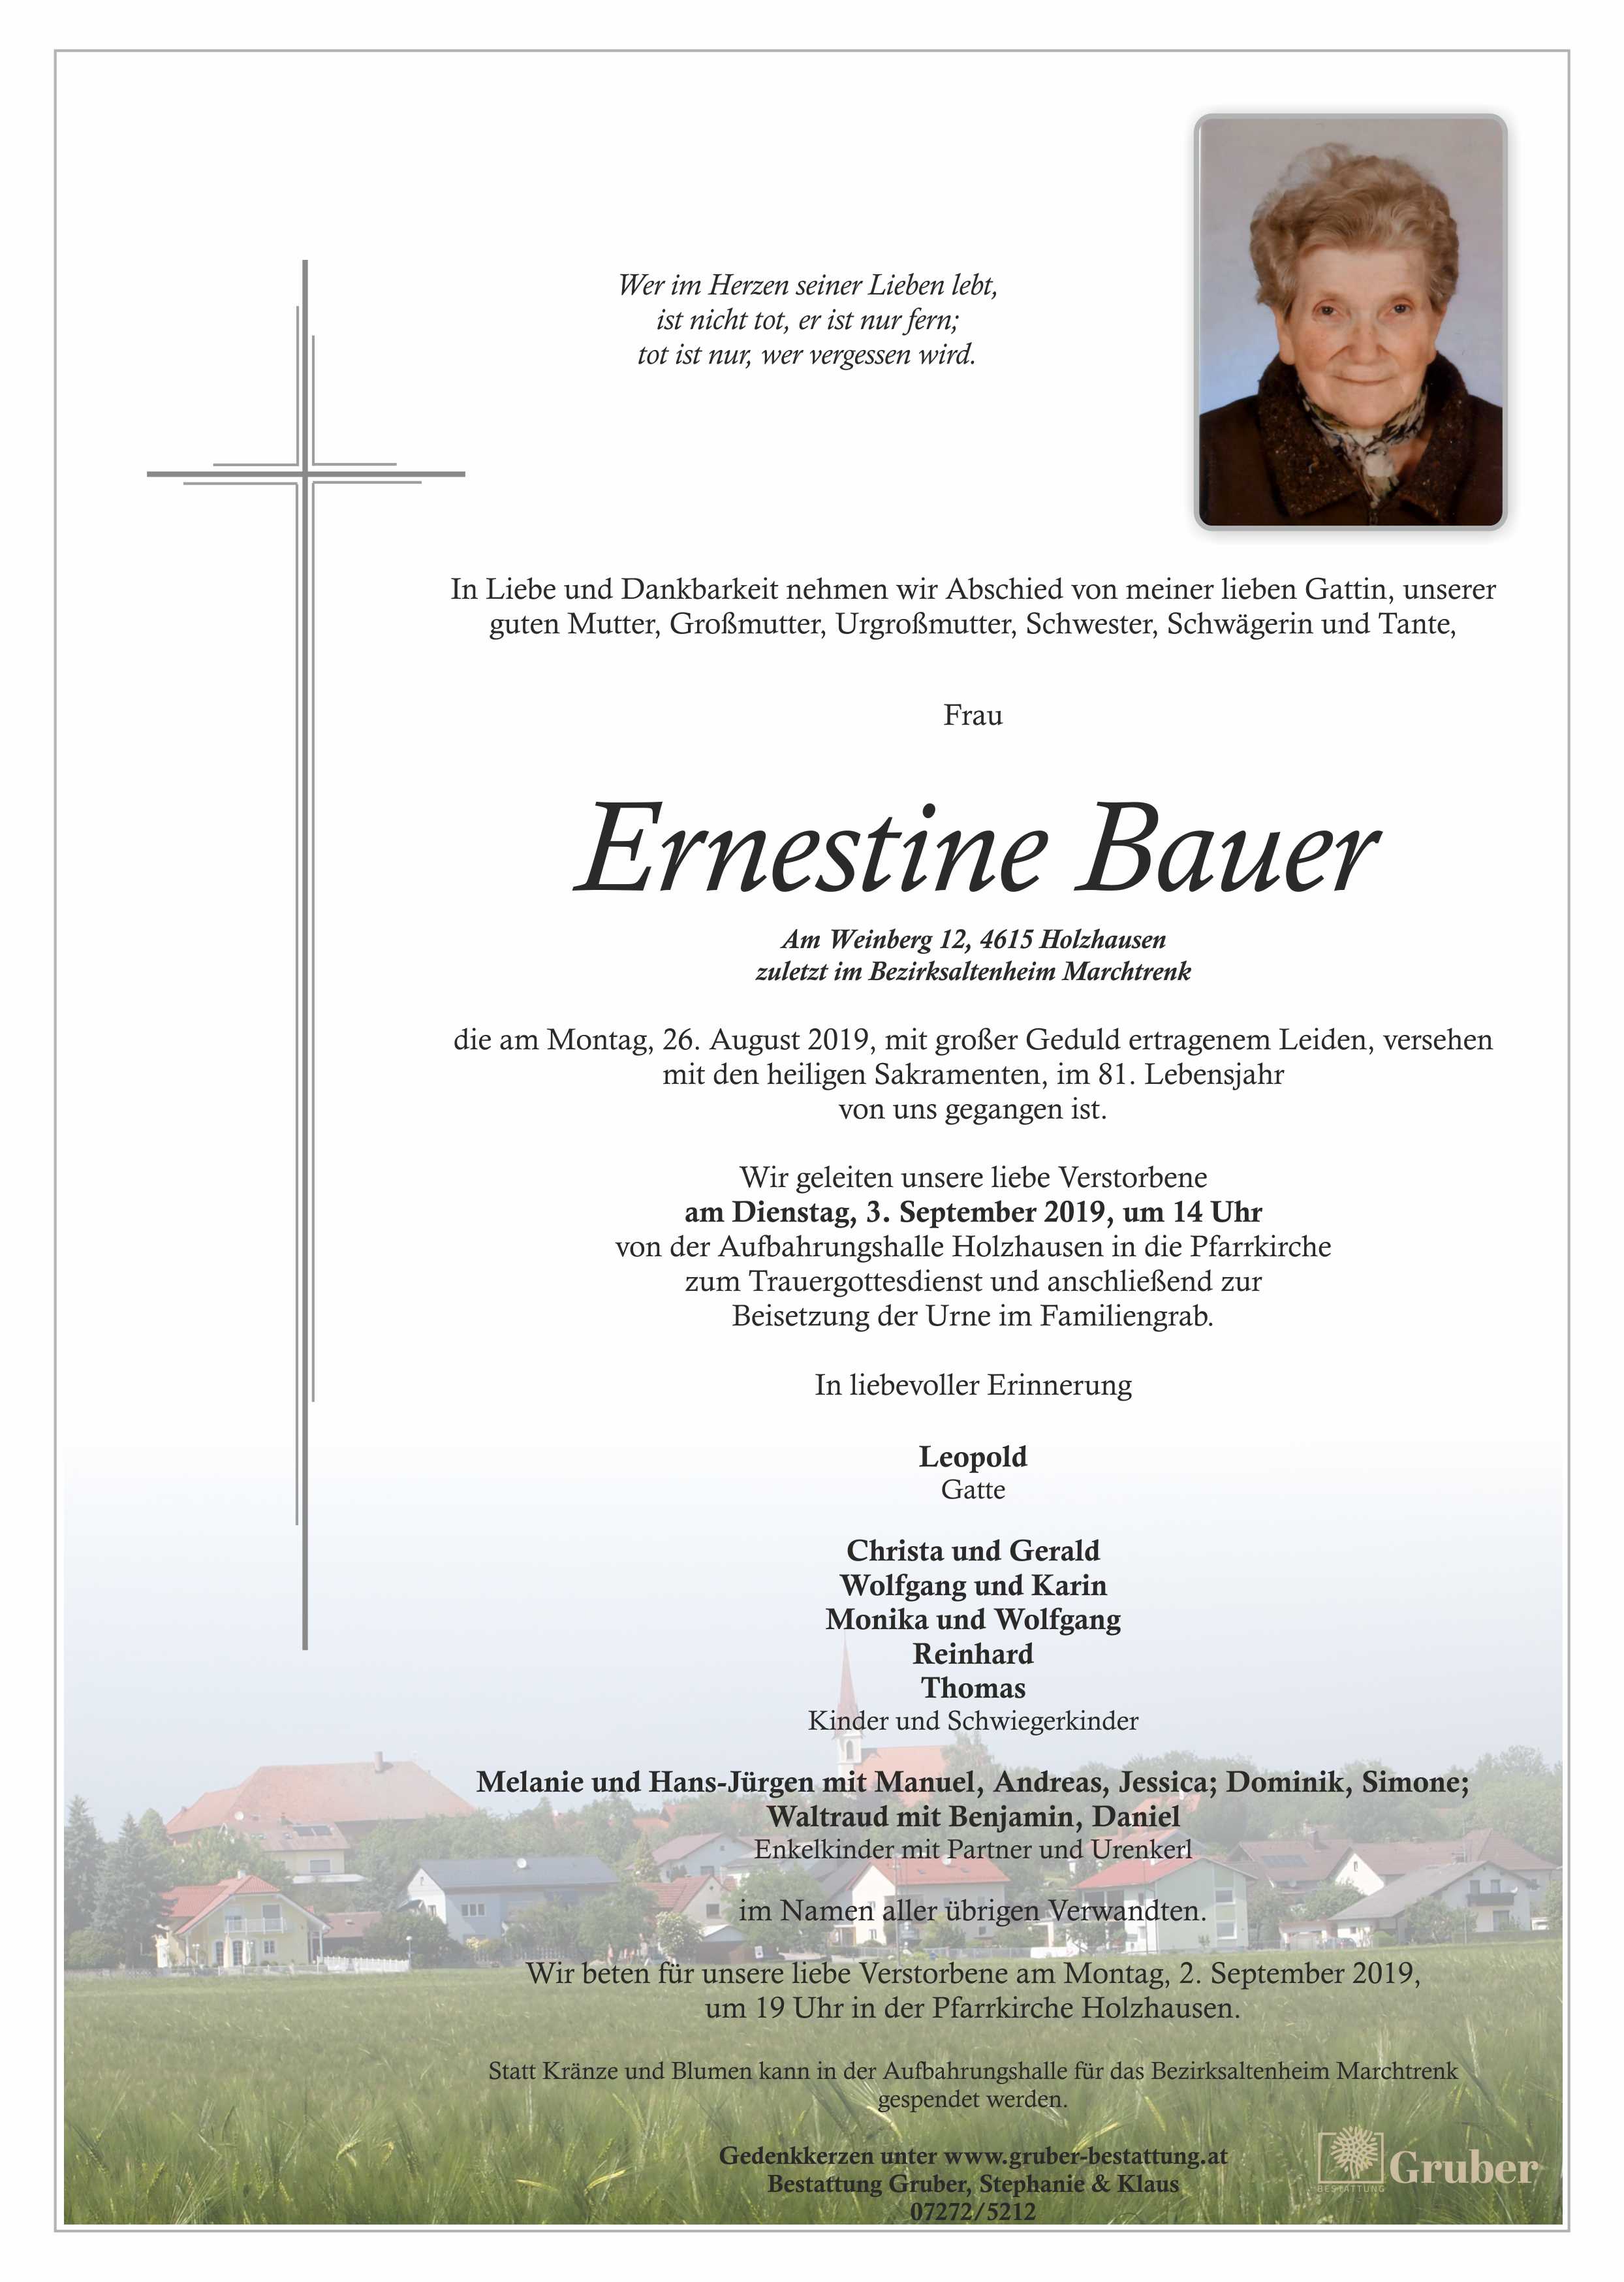 Ernestine Bauer (Holzhausen)